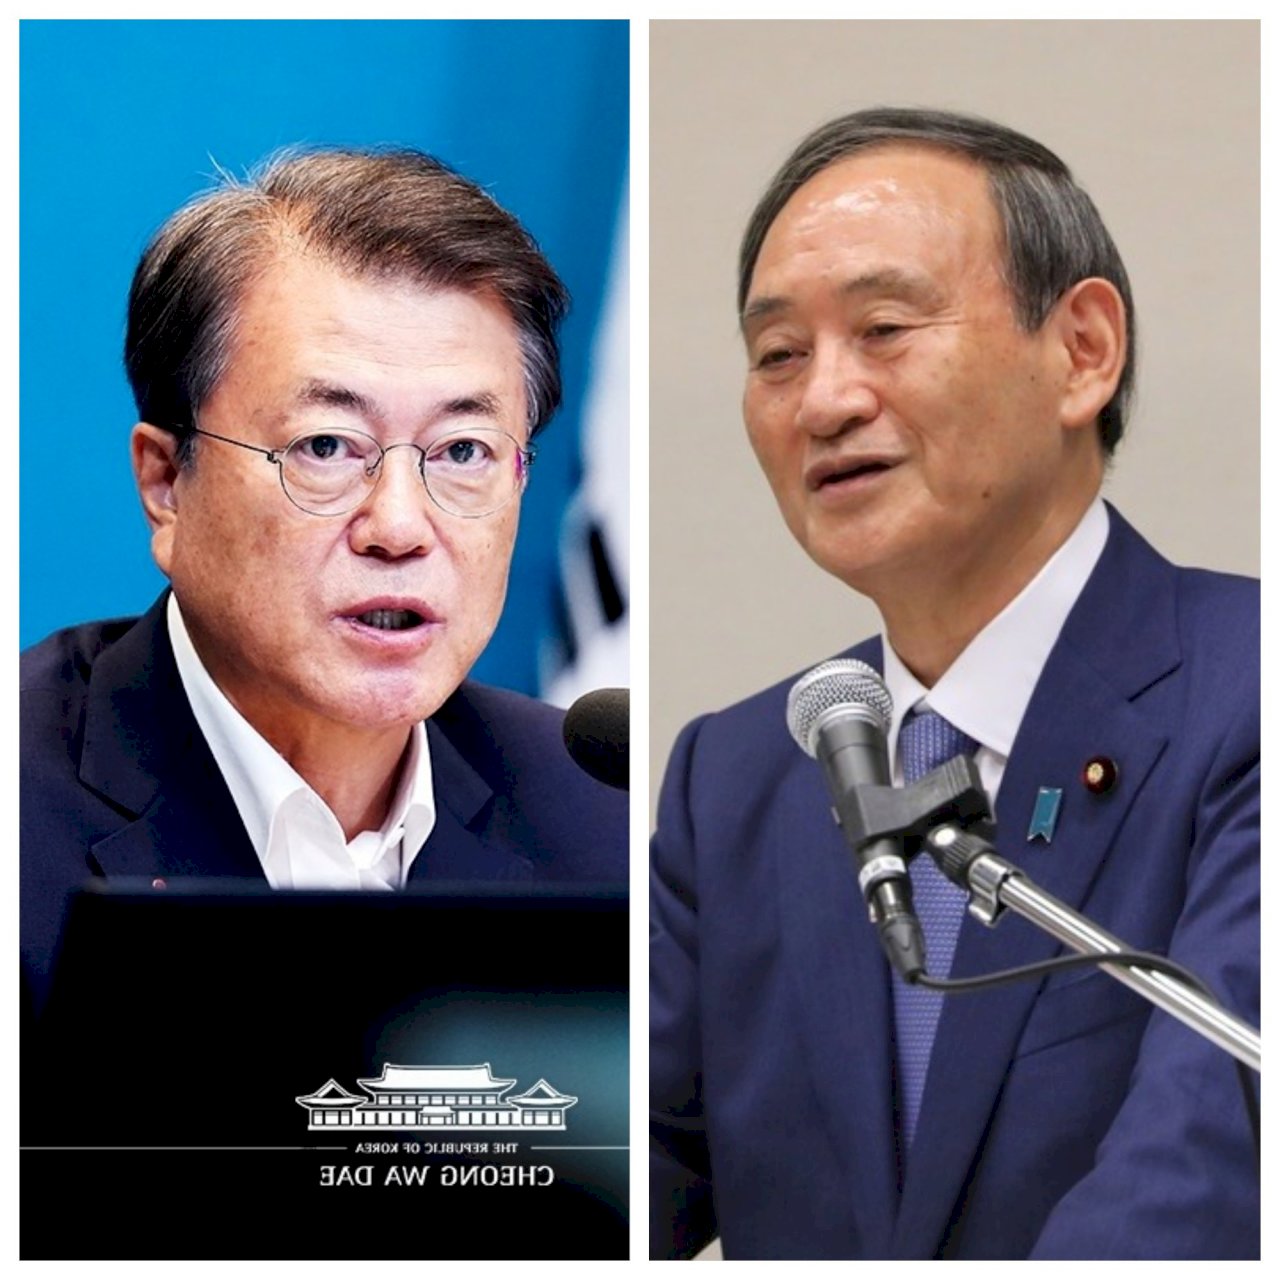 共同對抗北韓 菅義偉希望修復與南韓關係